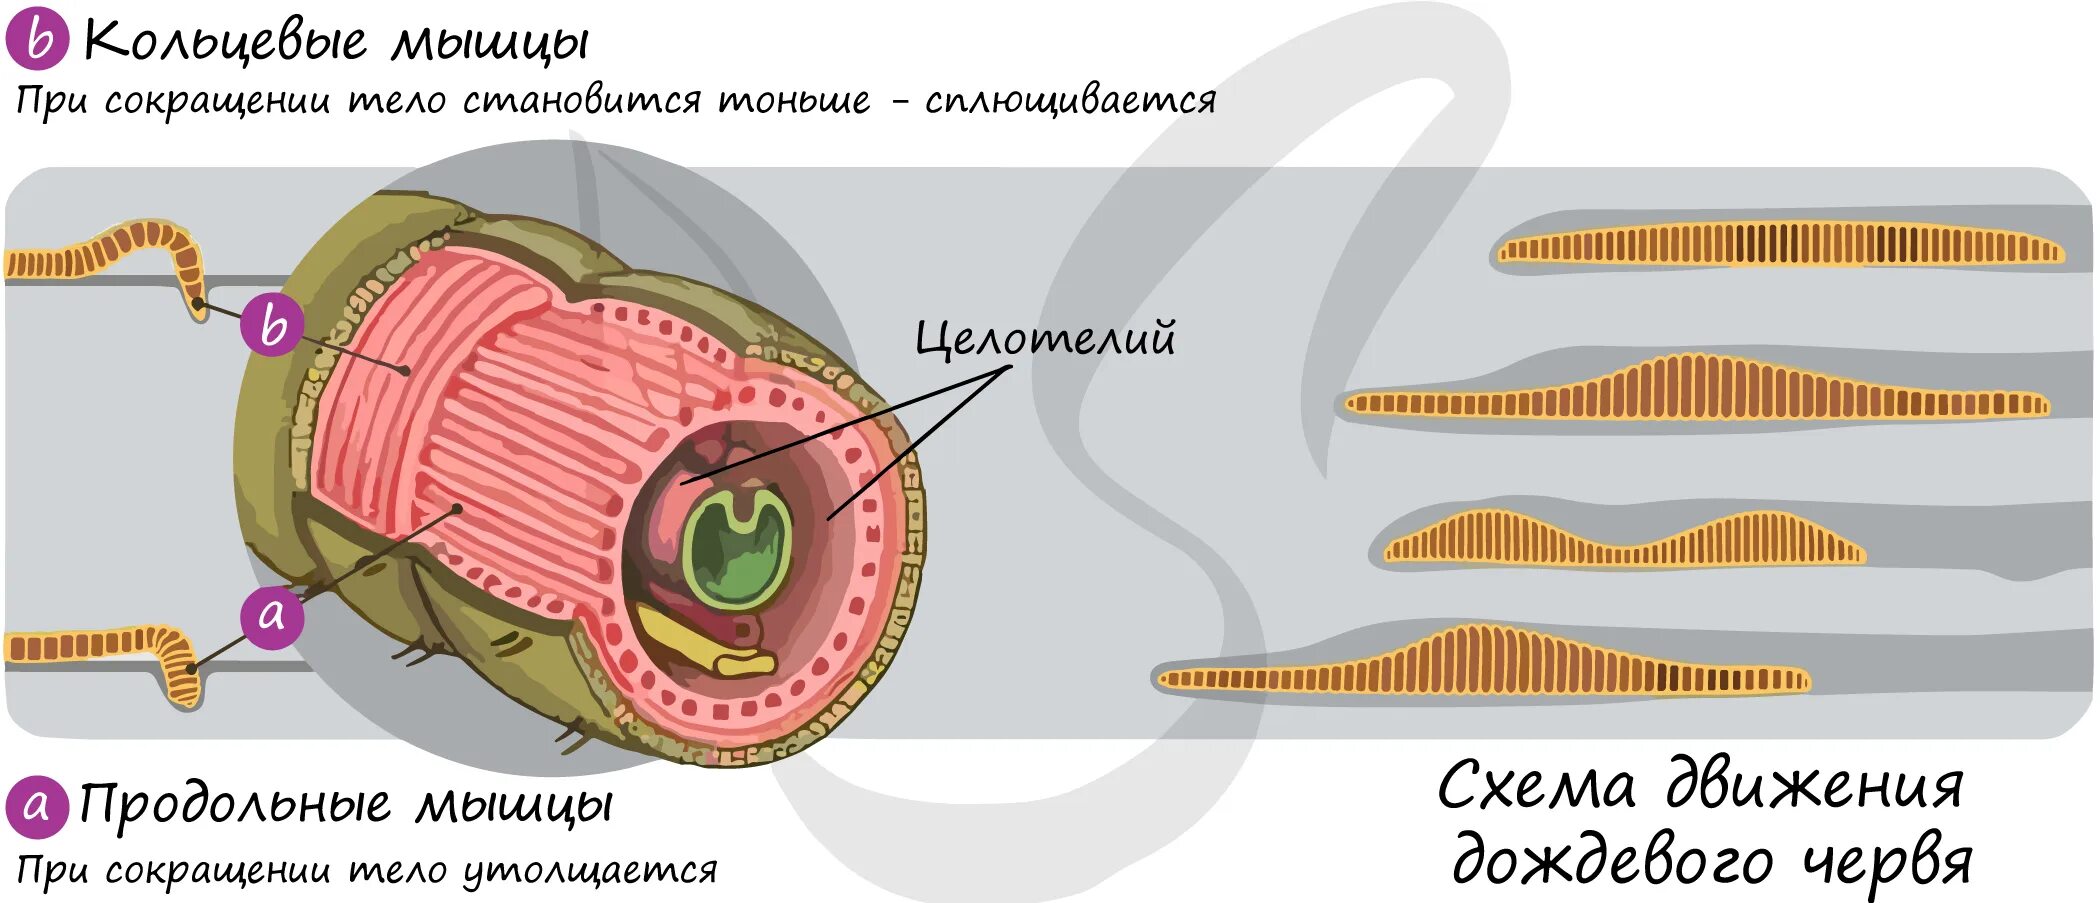 Мышцы беспозвоночных. Мышечная система дождевого червя. Строение кольчатых червей мышцы. Кольцевые и продольные мышцы у дождевого червя. Продольные мышечные волокна у червей.